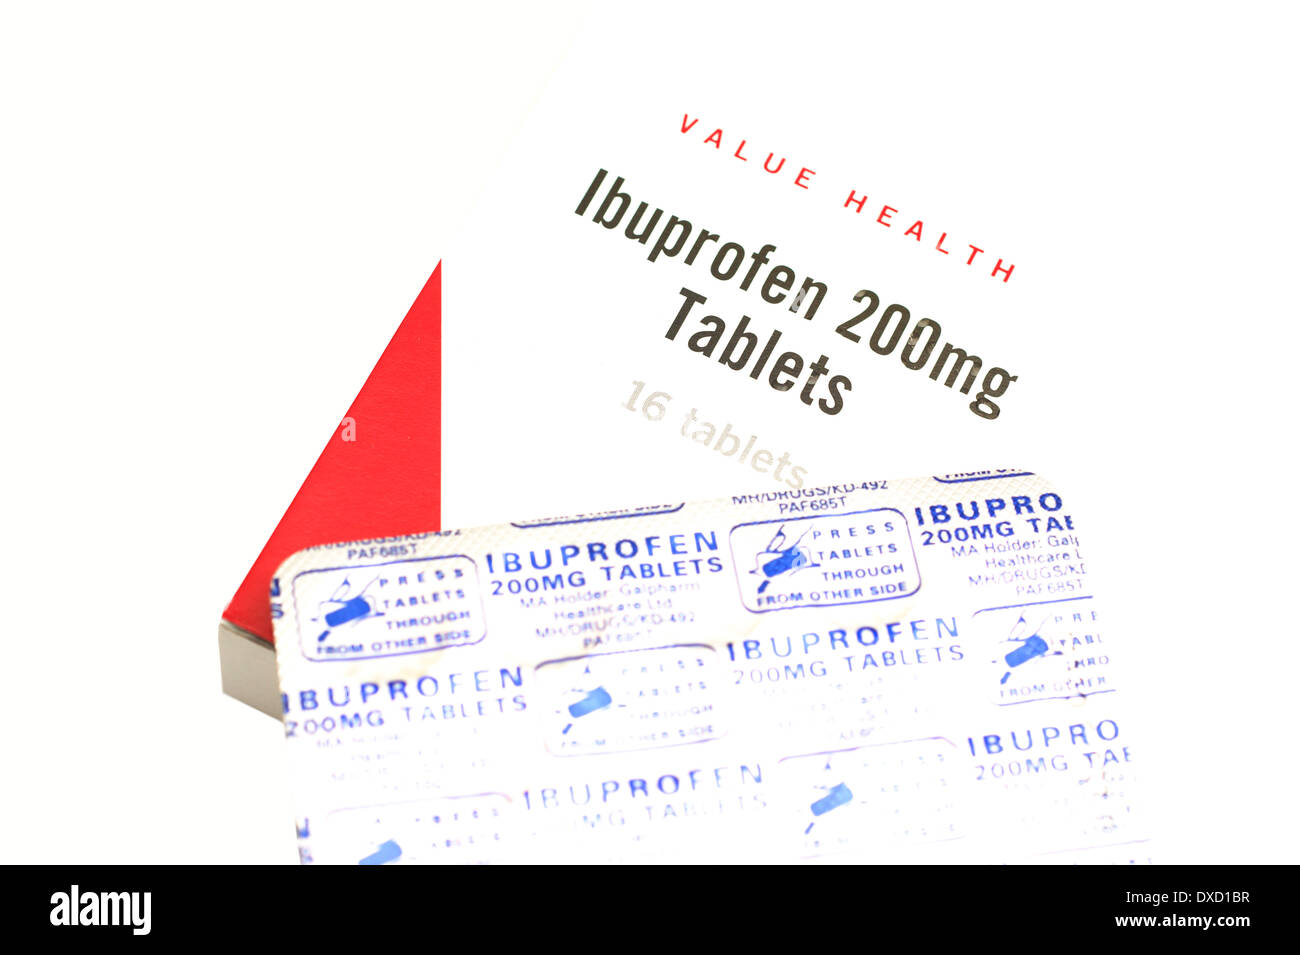 Supermercato & marchio generico confezioni di compresse di ibuprofene e caplet con informazioni in braille per i non vedenti ipovedenti Foto Stock